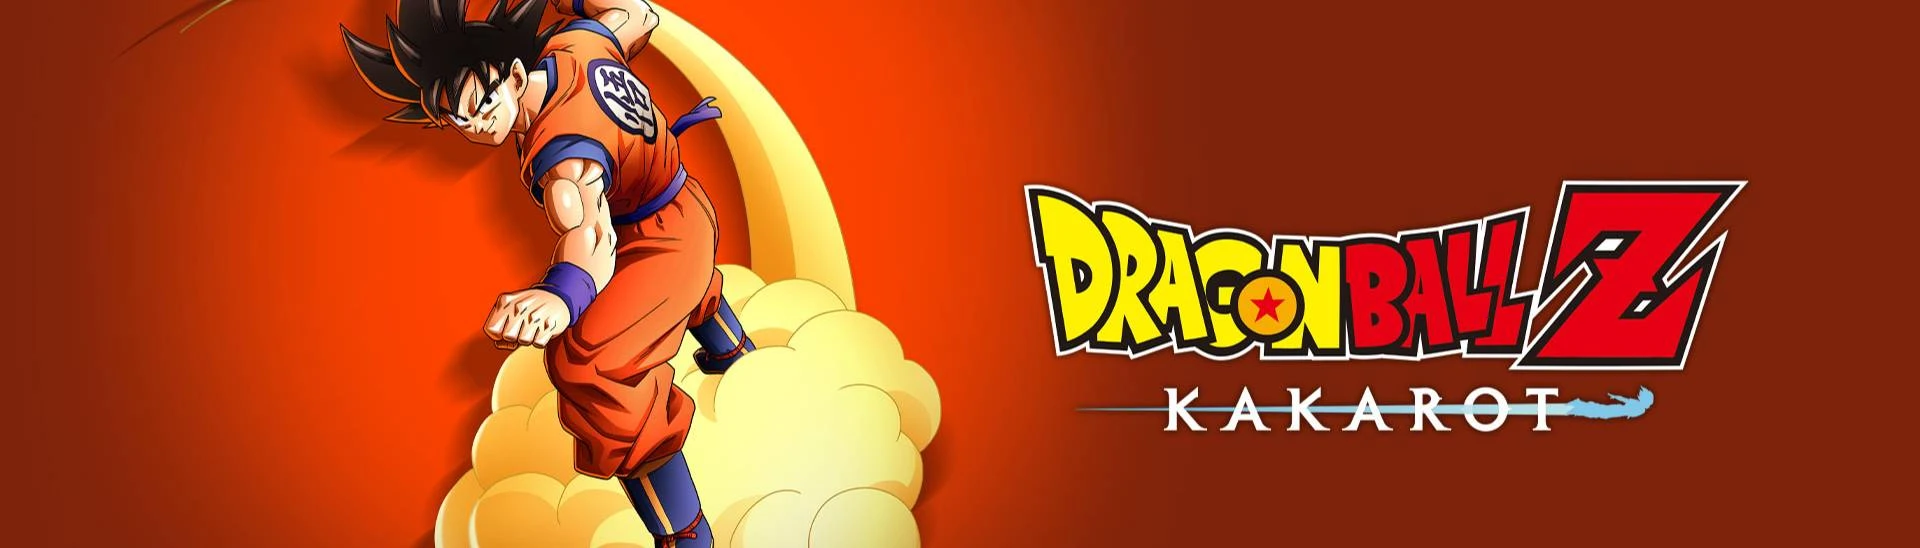 DRAGON BALL Z: KAKAROT - 23rd World Tournament on Steam